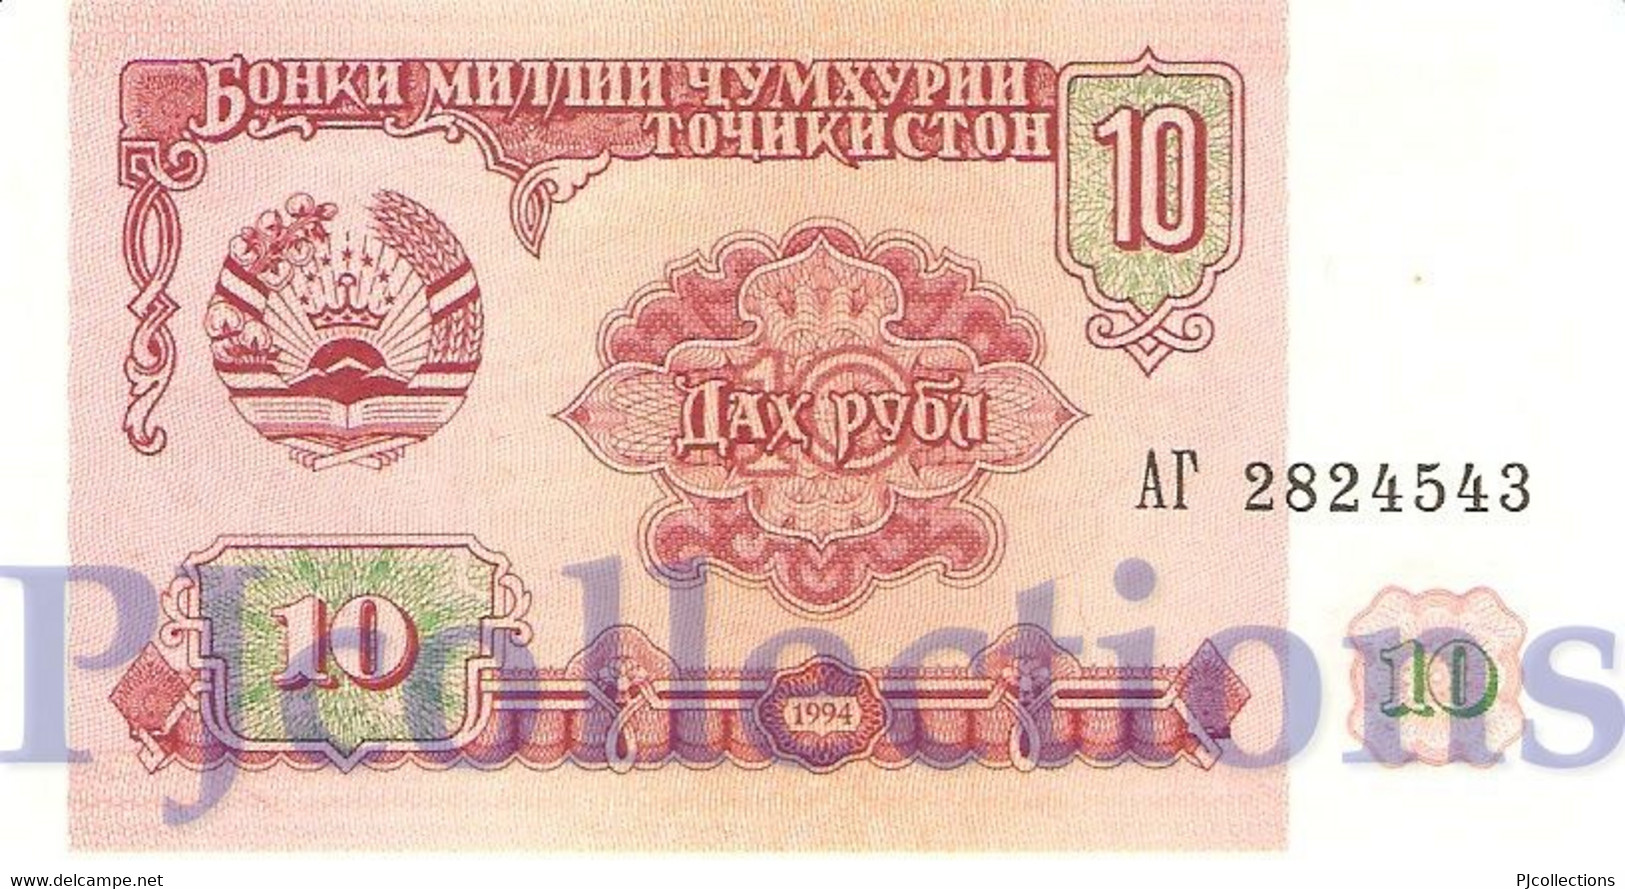 TAJIKISTAN 10 RUBLES 1994 PICK 3a UNC - Tadjikistan